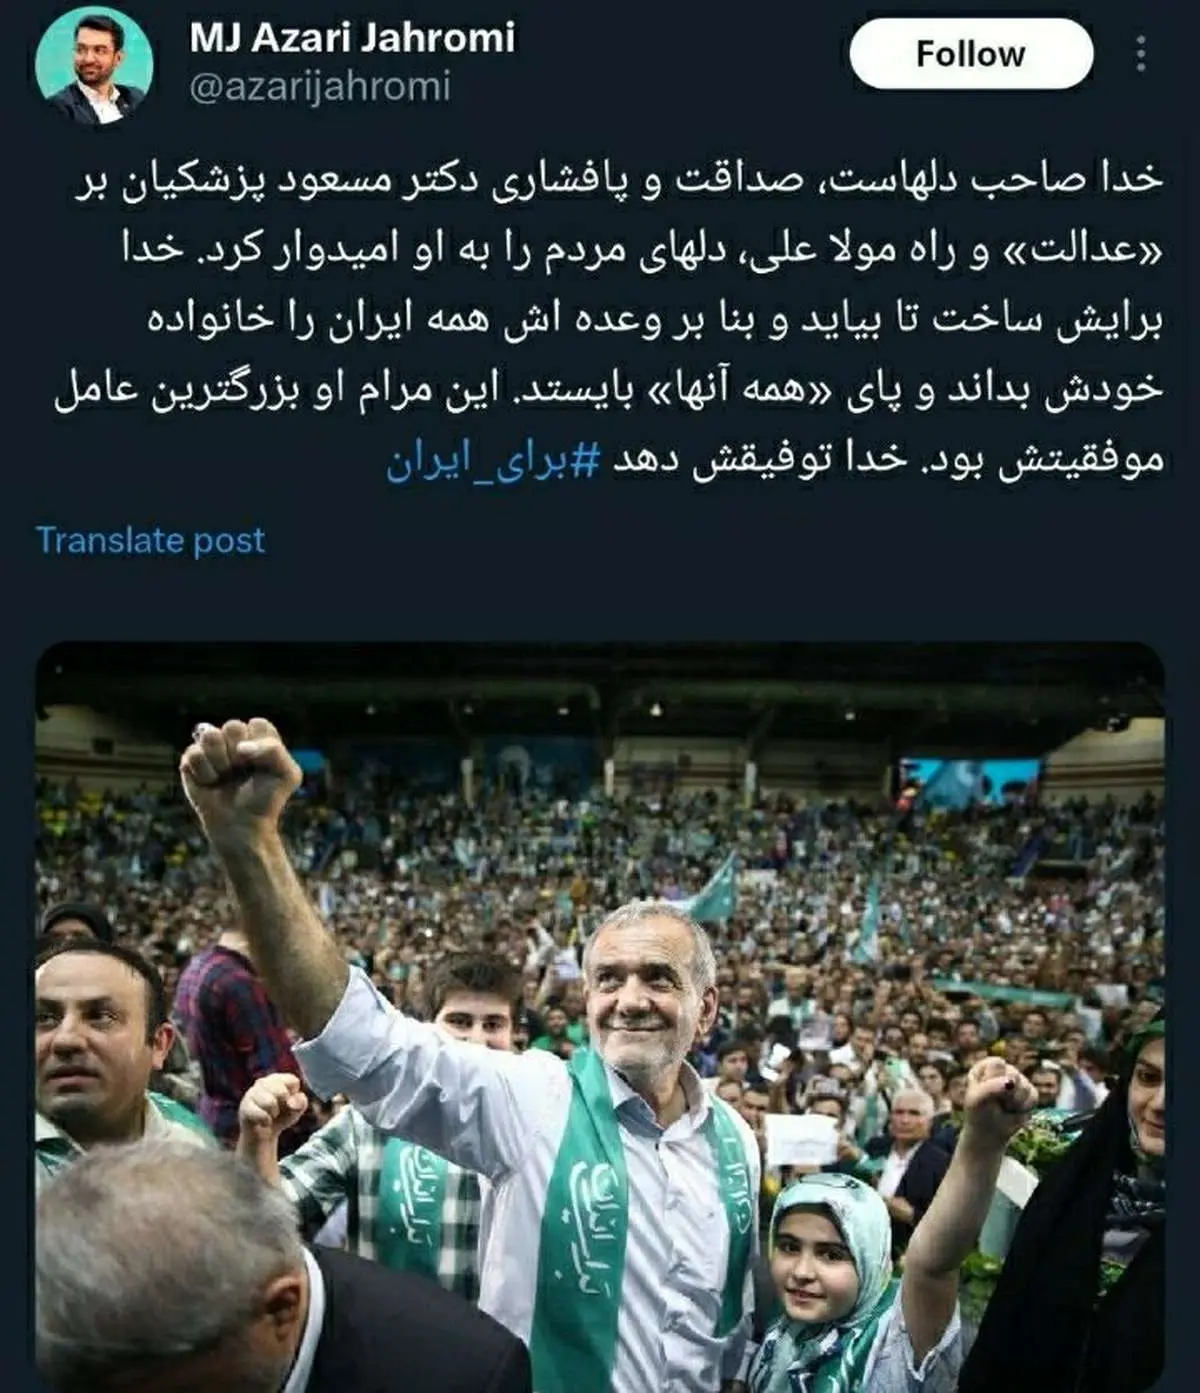 واکنش آذری جهرمی به پیروزی پزشکیان در انتخابات چه بود؟